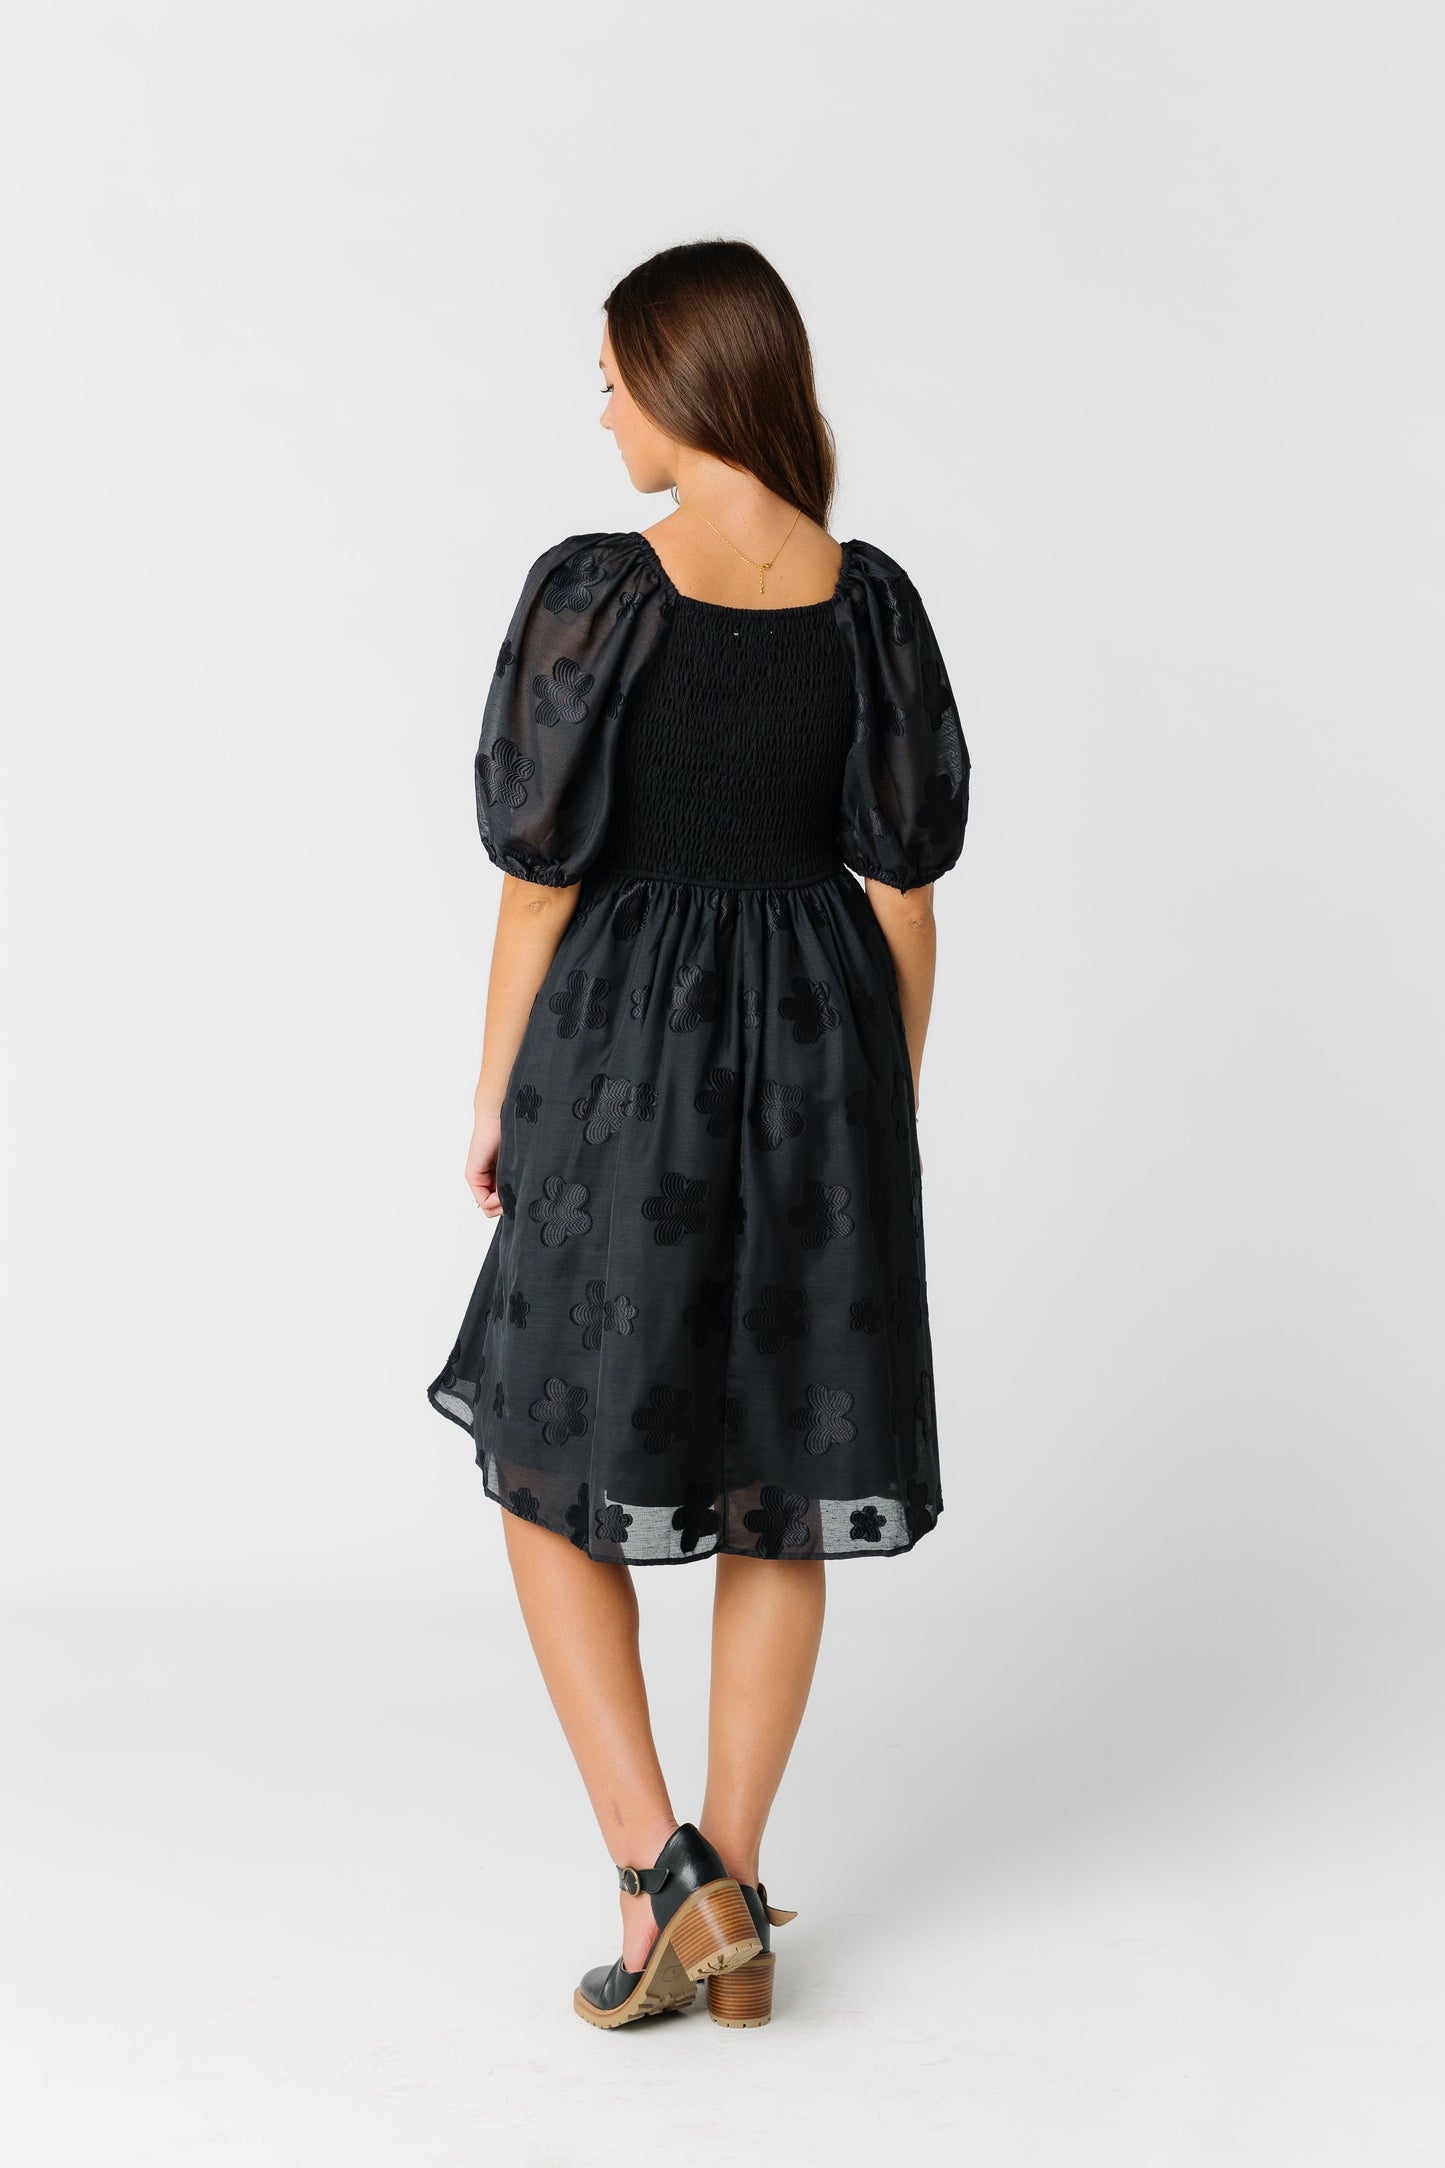 Daisy Design Elegant Dress WOMEN'S DRESS Polagram 